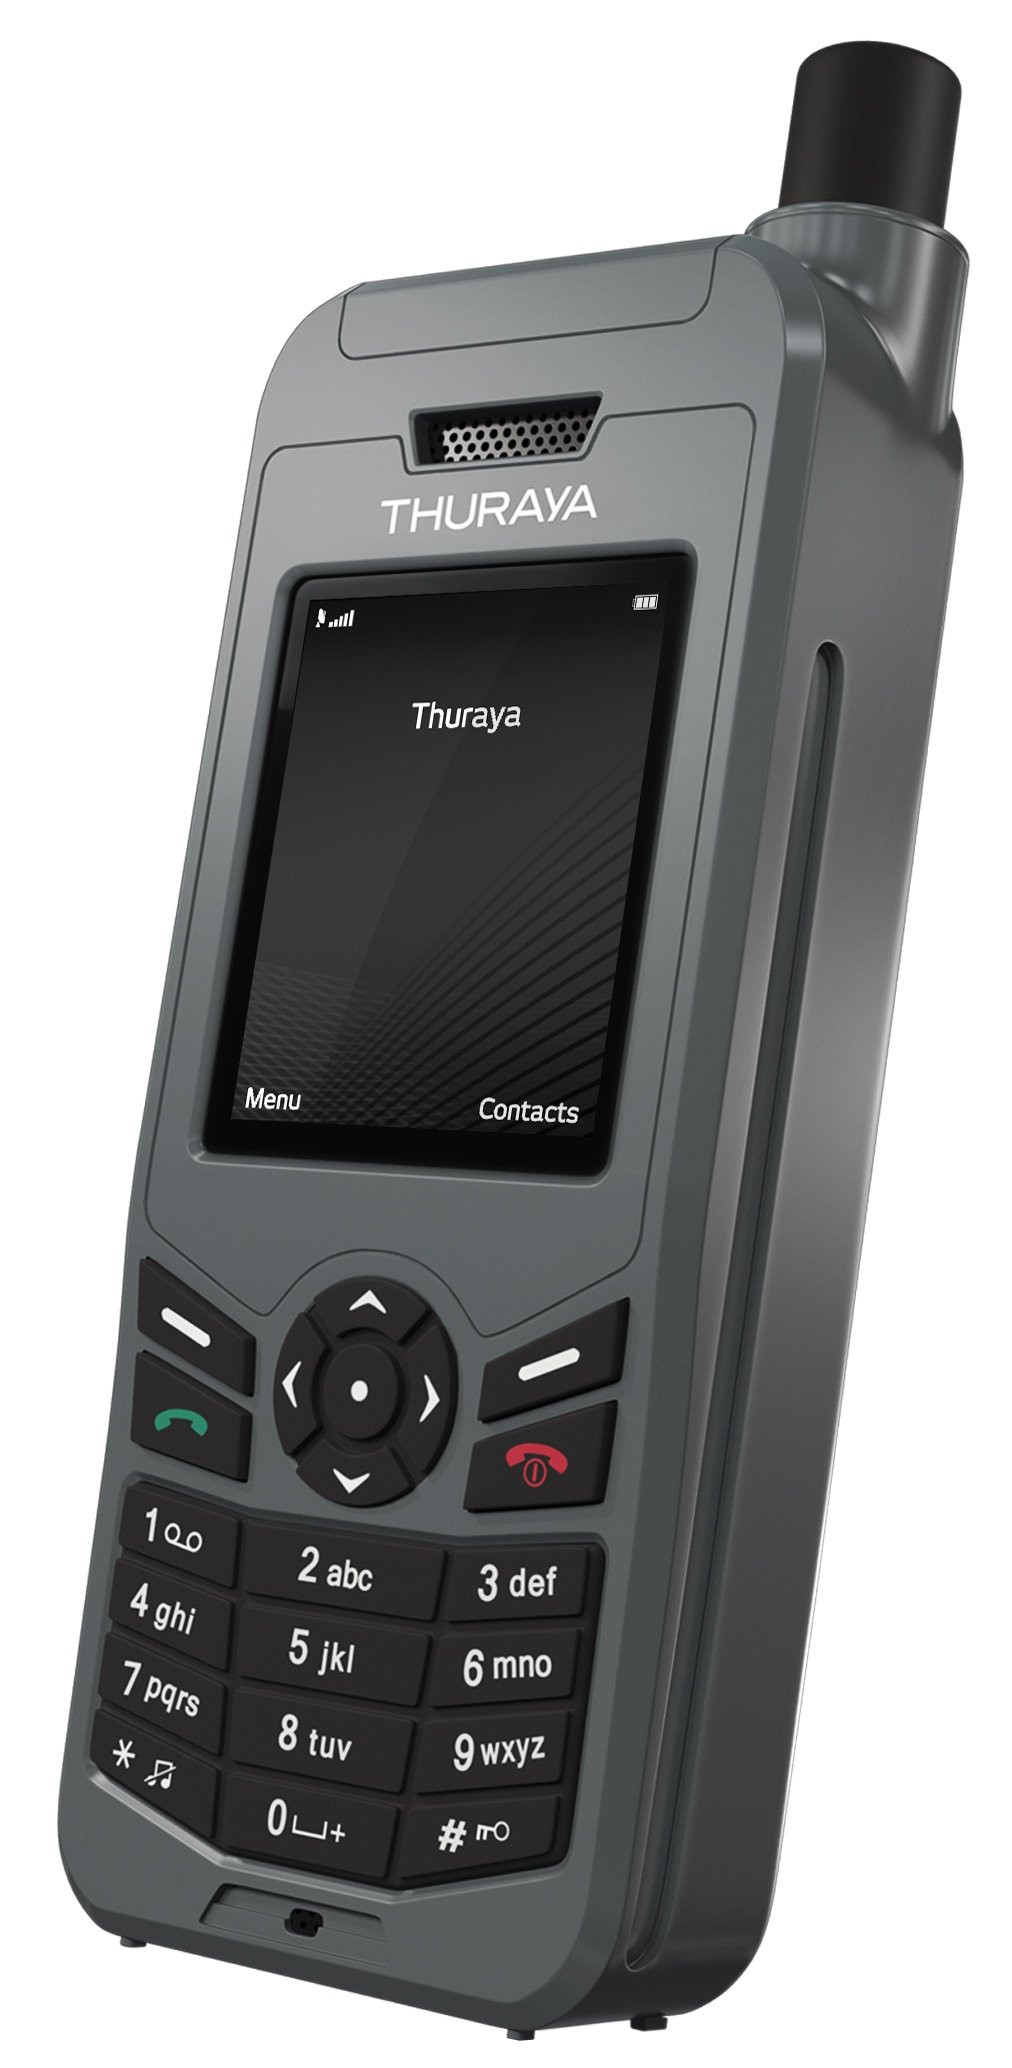 Téléphone satellite Thuraya XT-LITE